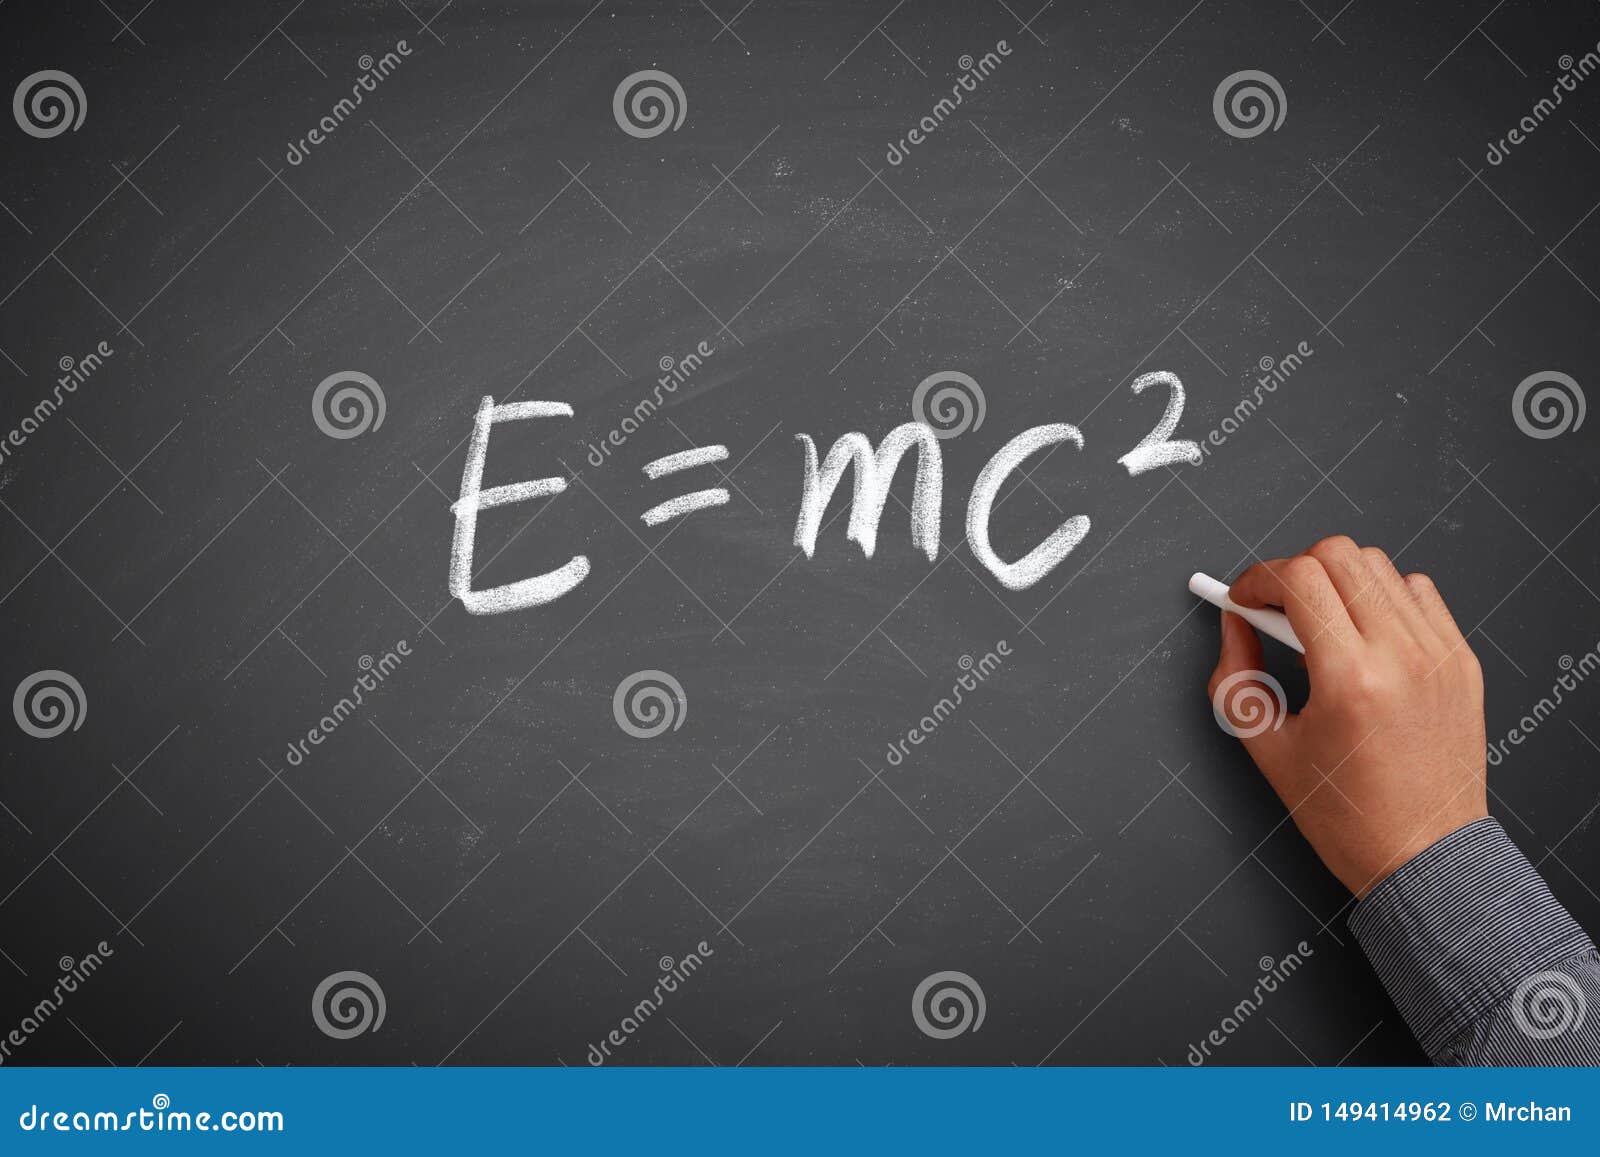 e=mc2 math concept